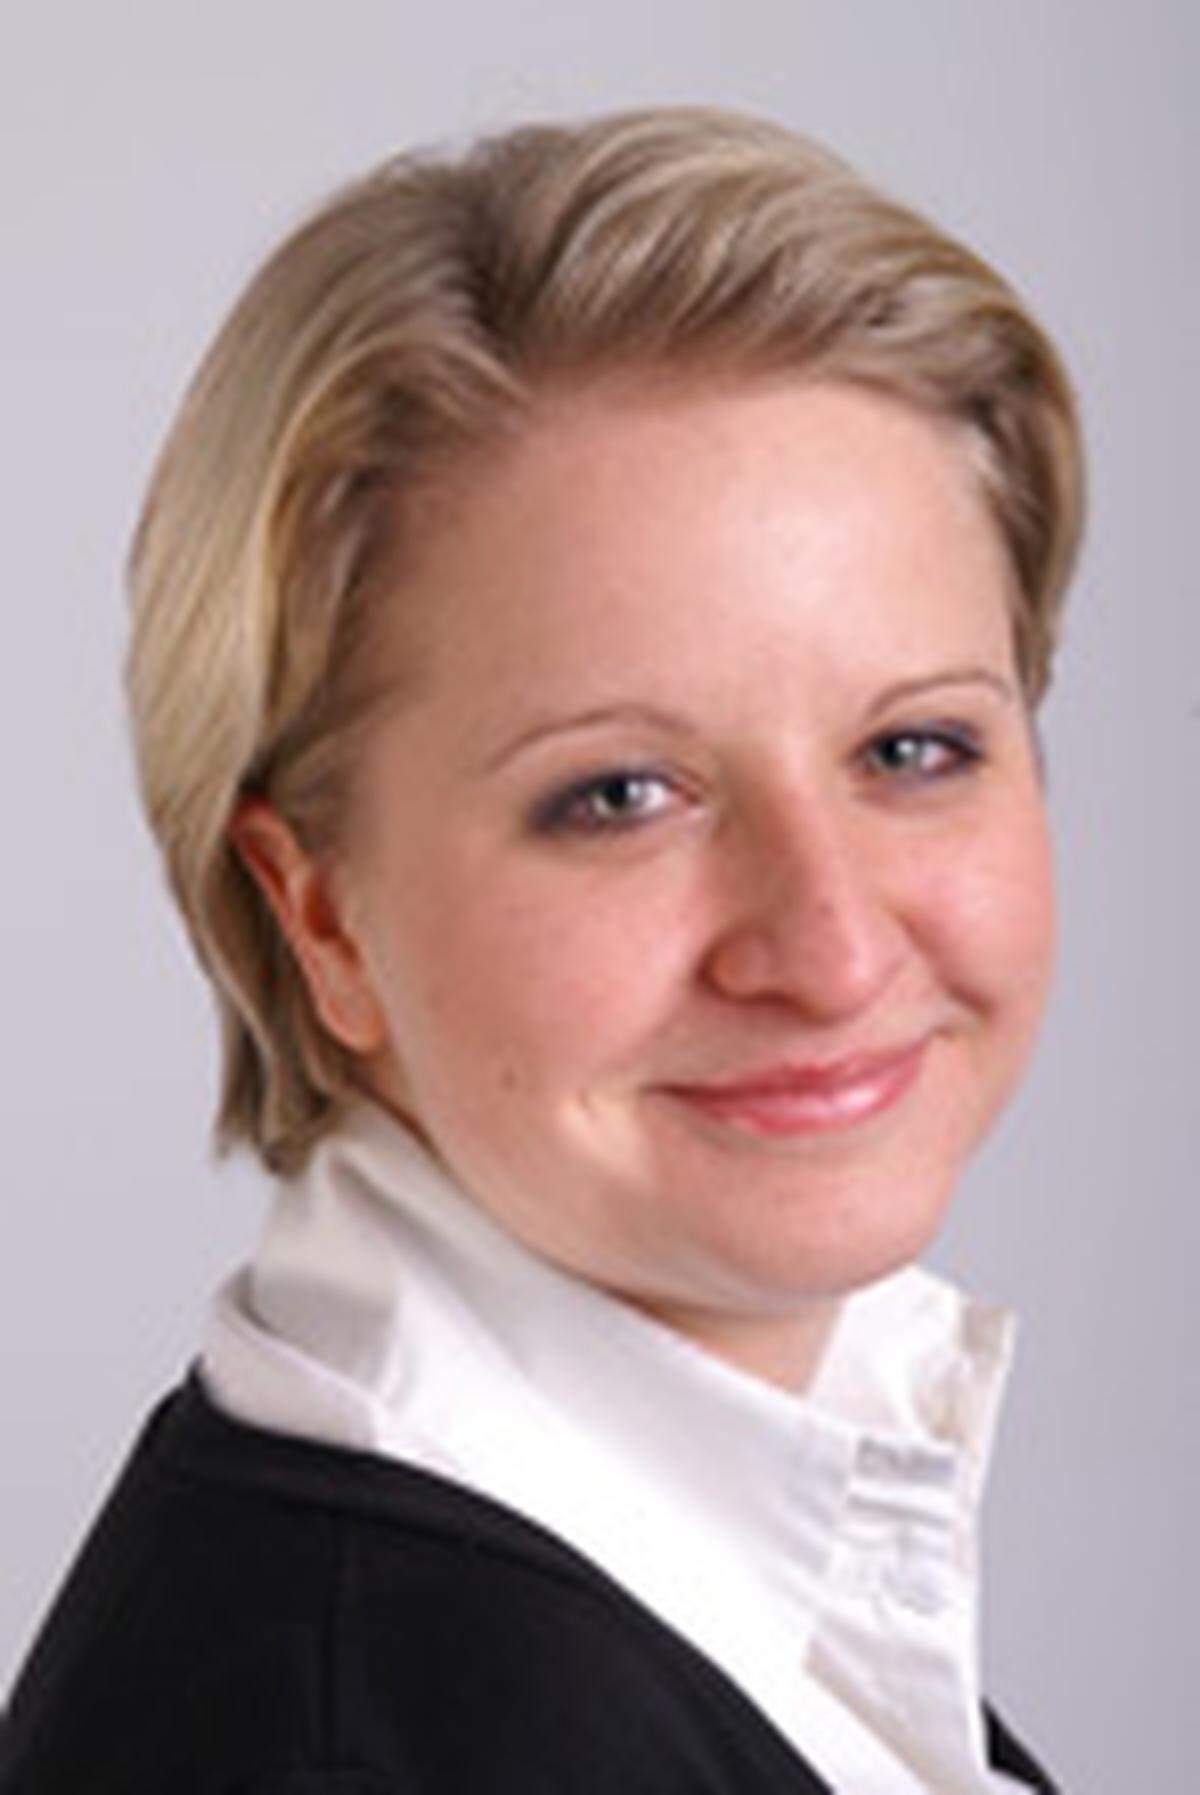 Sonja Rigler ist HP Program Manager bei Tech Data. Die 29-Jährige koordiniert und betreut der Marketing-Maßnahmen und schließt eben ihr Betriebswirtschaftsstudium an der WU (Handel und Marketing) ab.